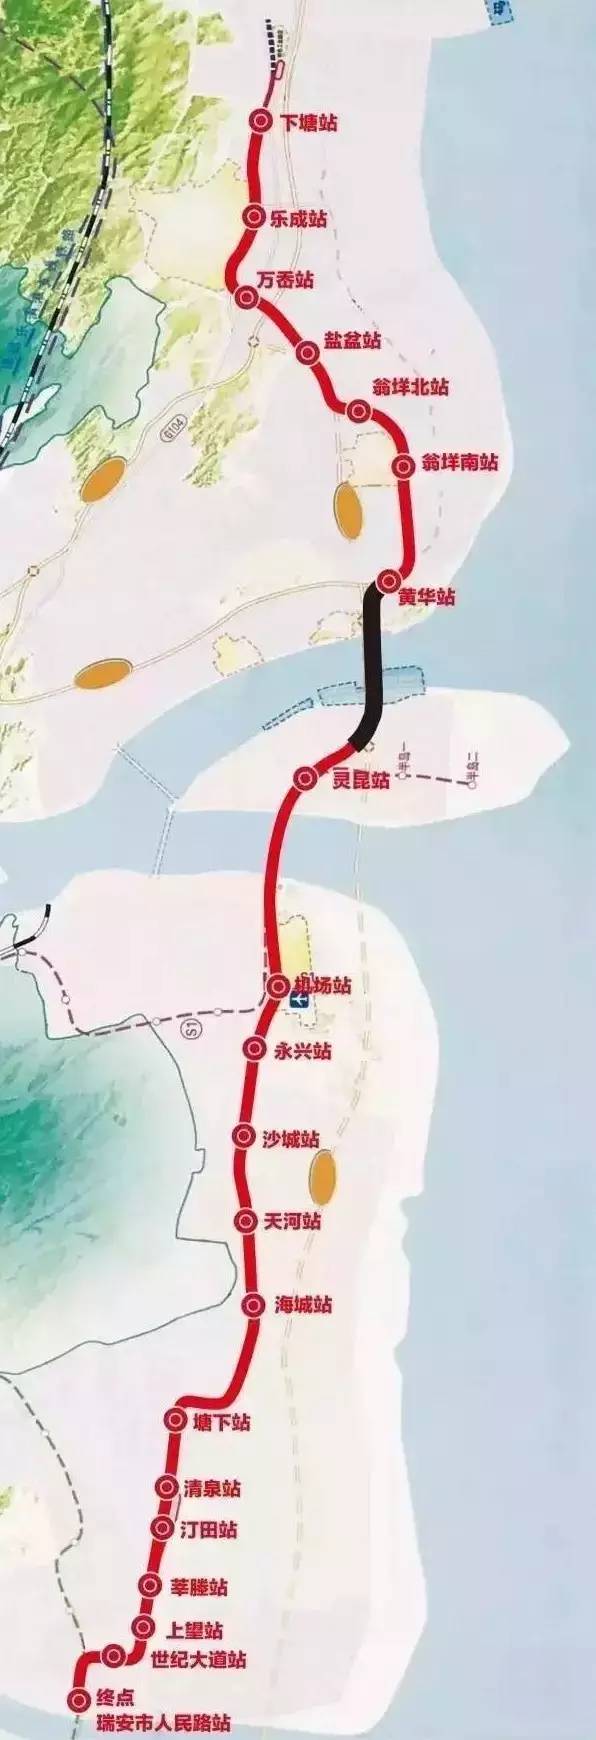 德清城际铁路图片